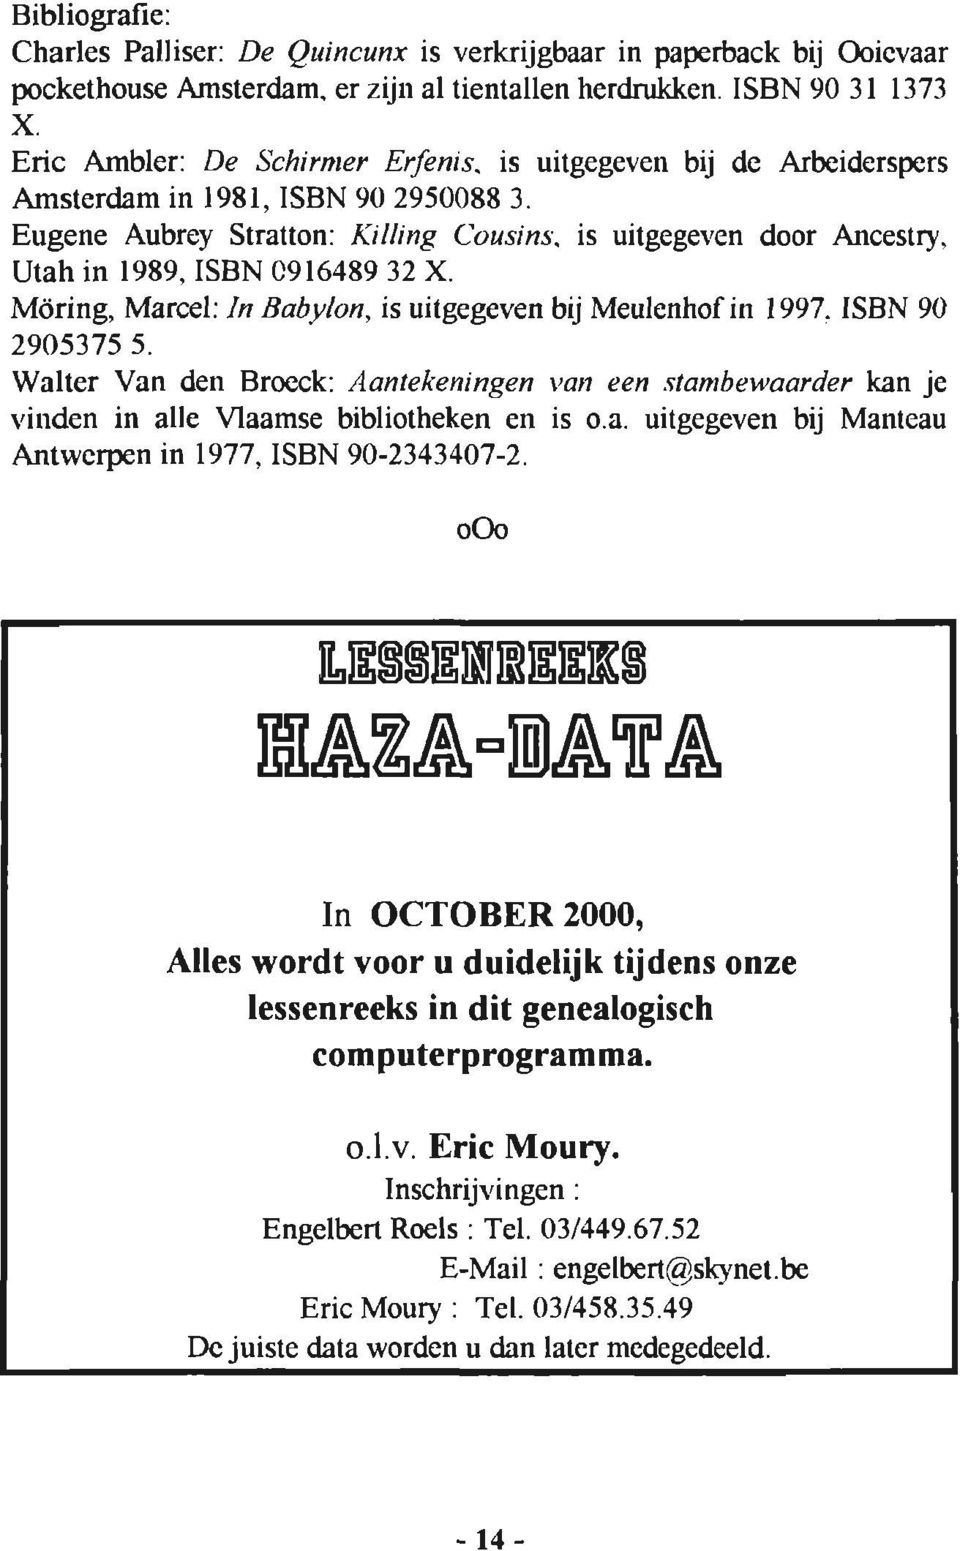 Möring, Marcel: In Babylon, is uitgegeven brj Meulenhof in 1997. ISBN 90 2905375 5. Walter Van den Broeck: Aantekeningen van een stambewaarder kan je vinden in alle Maamse bibliotheken en is o.a. uitgegeven bij Manteau Antwerpen in 1977, ISBN 90-2343407 -2.